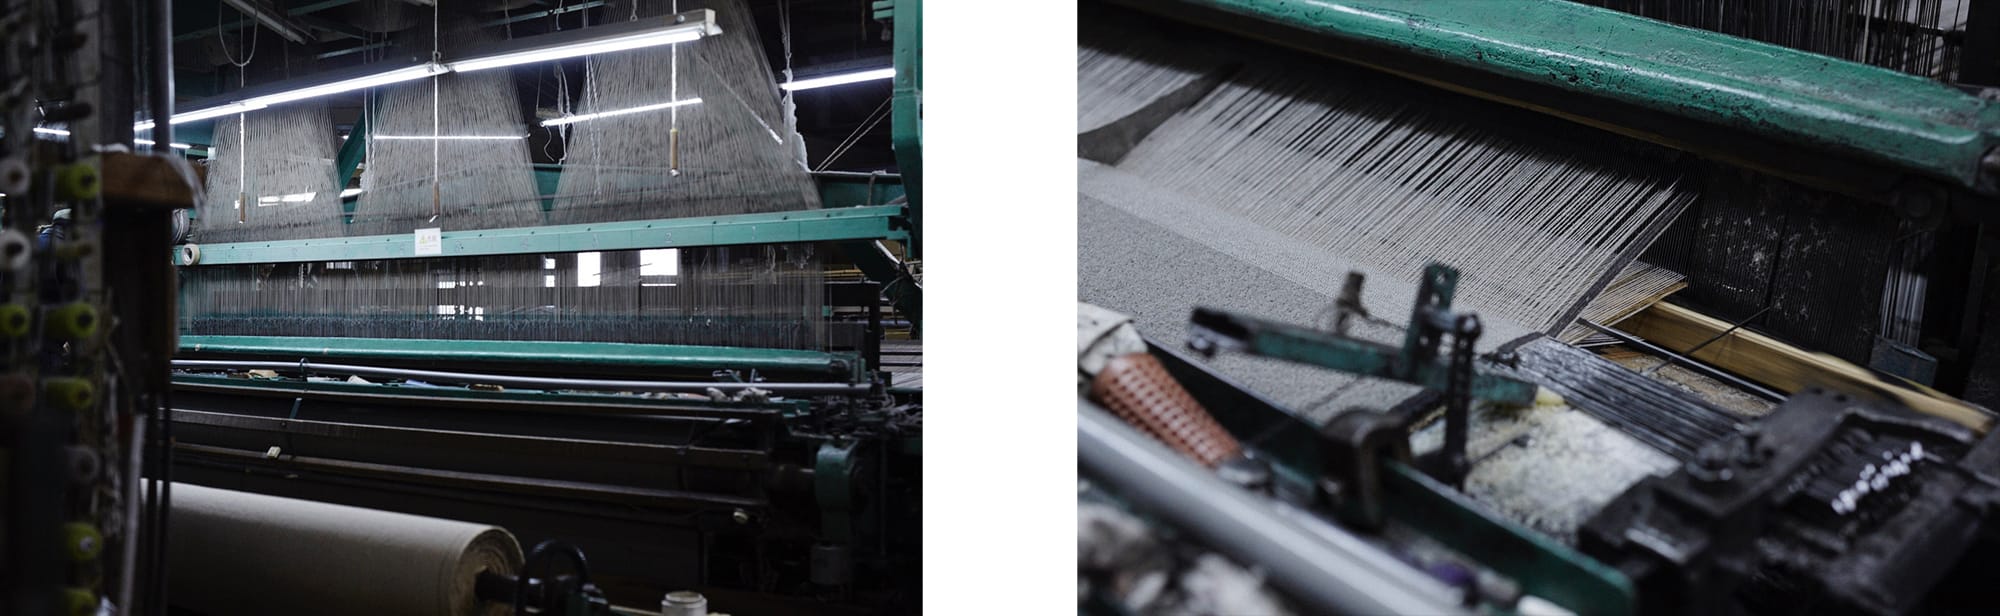 これらのカーペットを作リ出すウィルトン織機は、1800年代のイギリス産業革命の時代に開発された歴史的な織機。堀田カーペットでは50年ほど前に日本で生産されたウィルトン織機を何度もメンテナンスをしながら使っている。